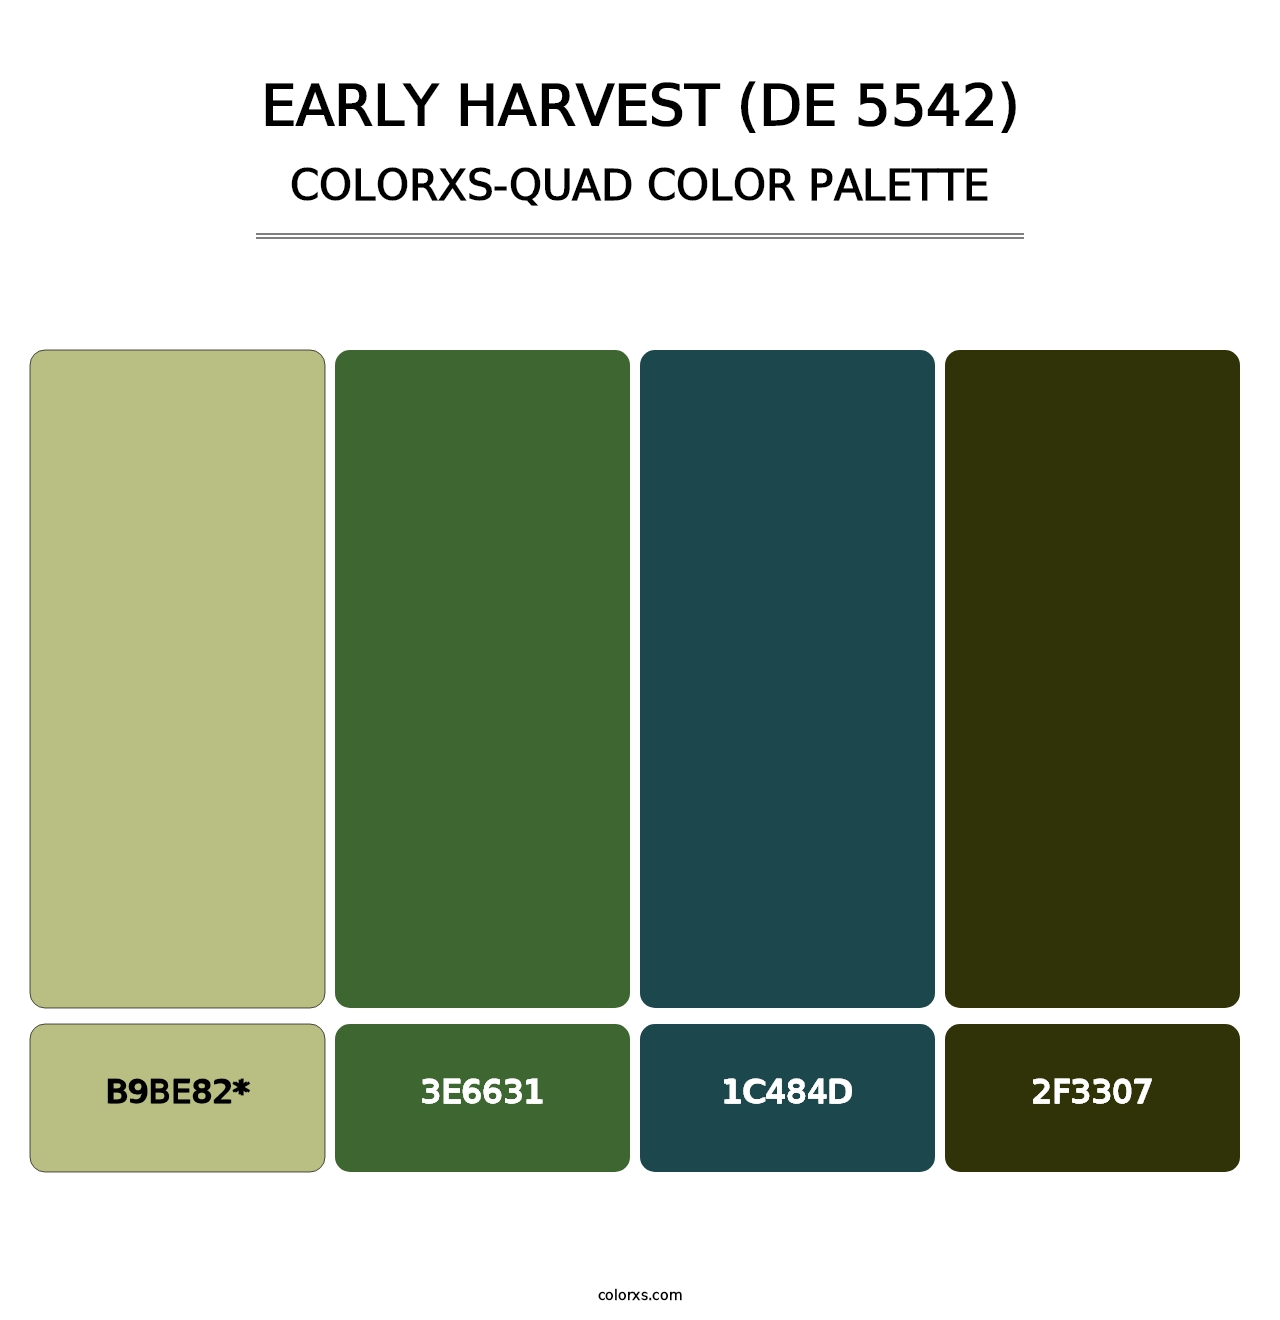 Early Harvest (DE 5542) - Colorxs Quad Palette